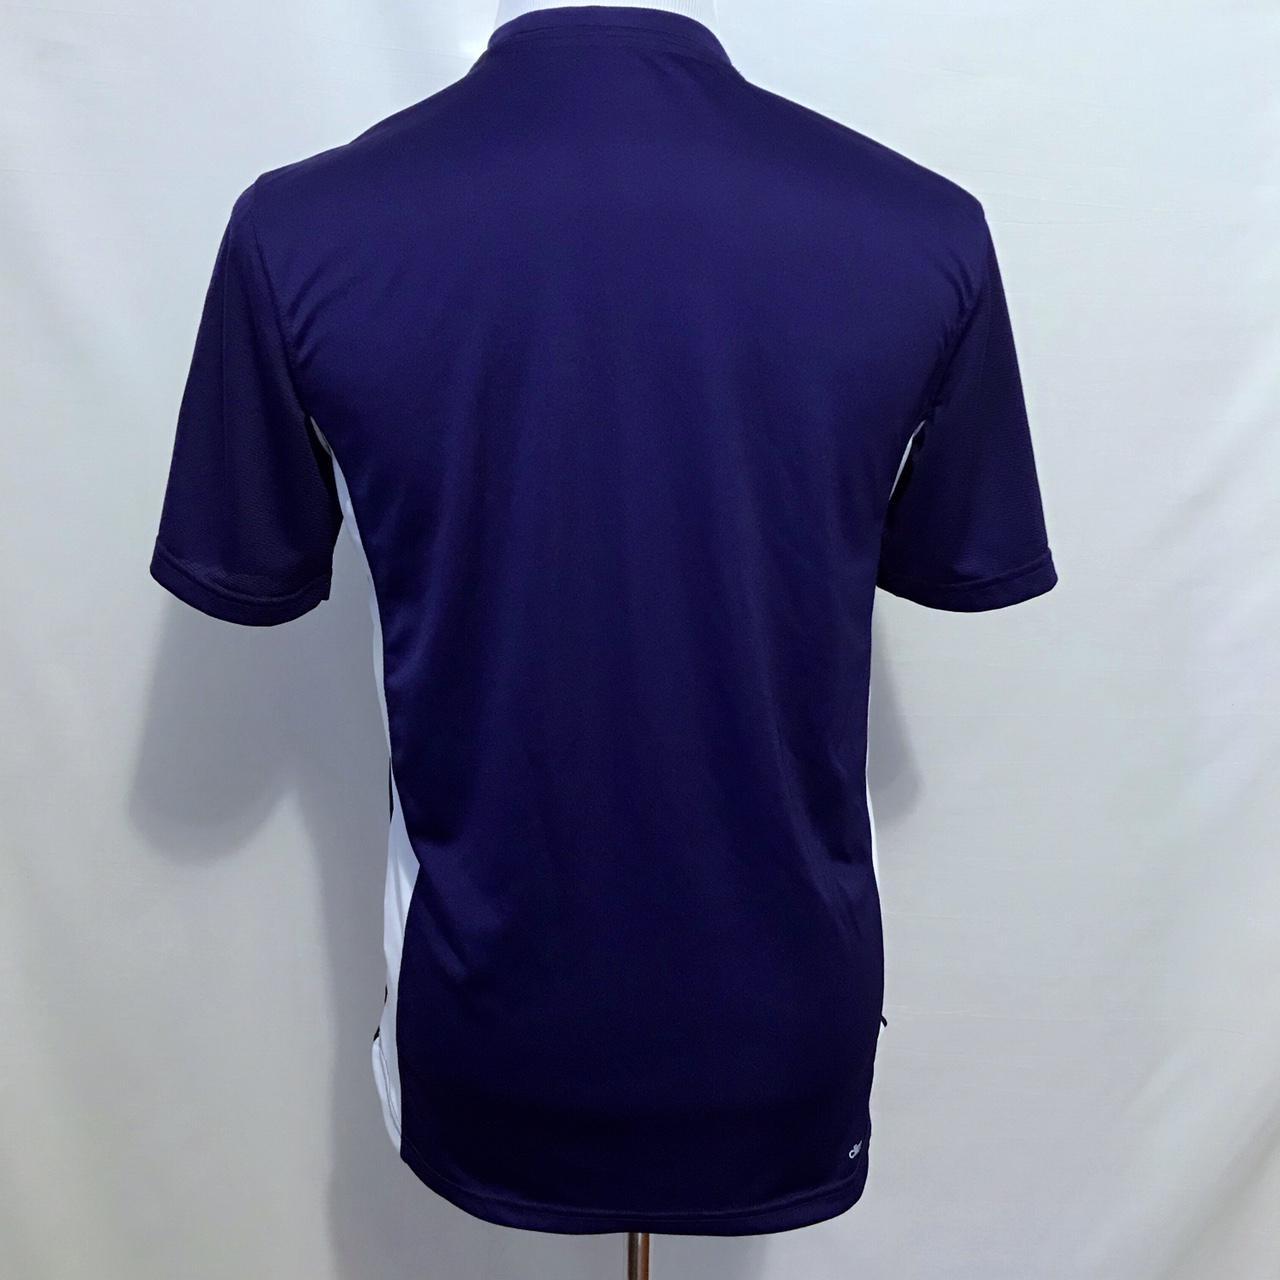 Product Image 3 - Adidas NWOT Performance Climacool Shirt